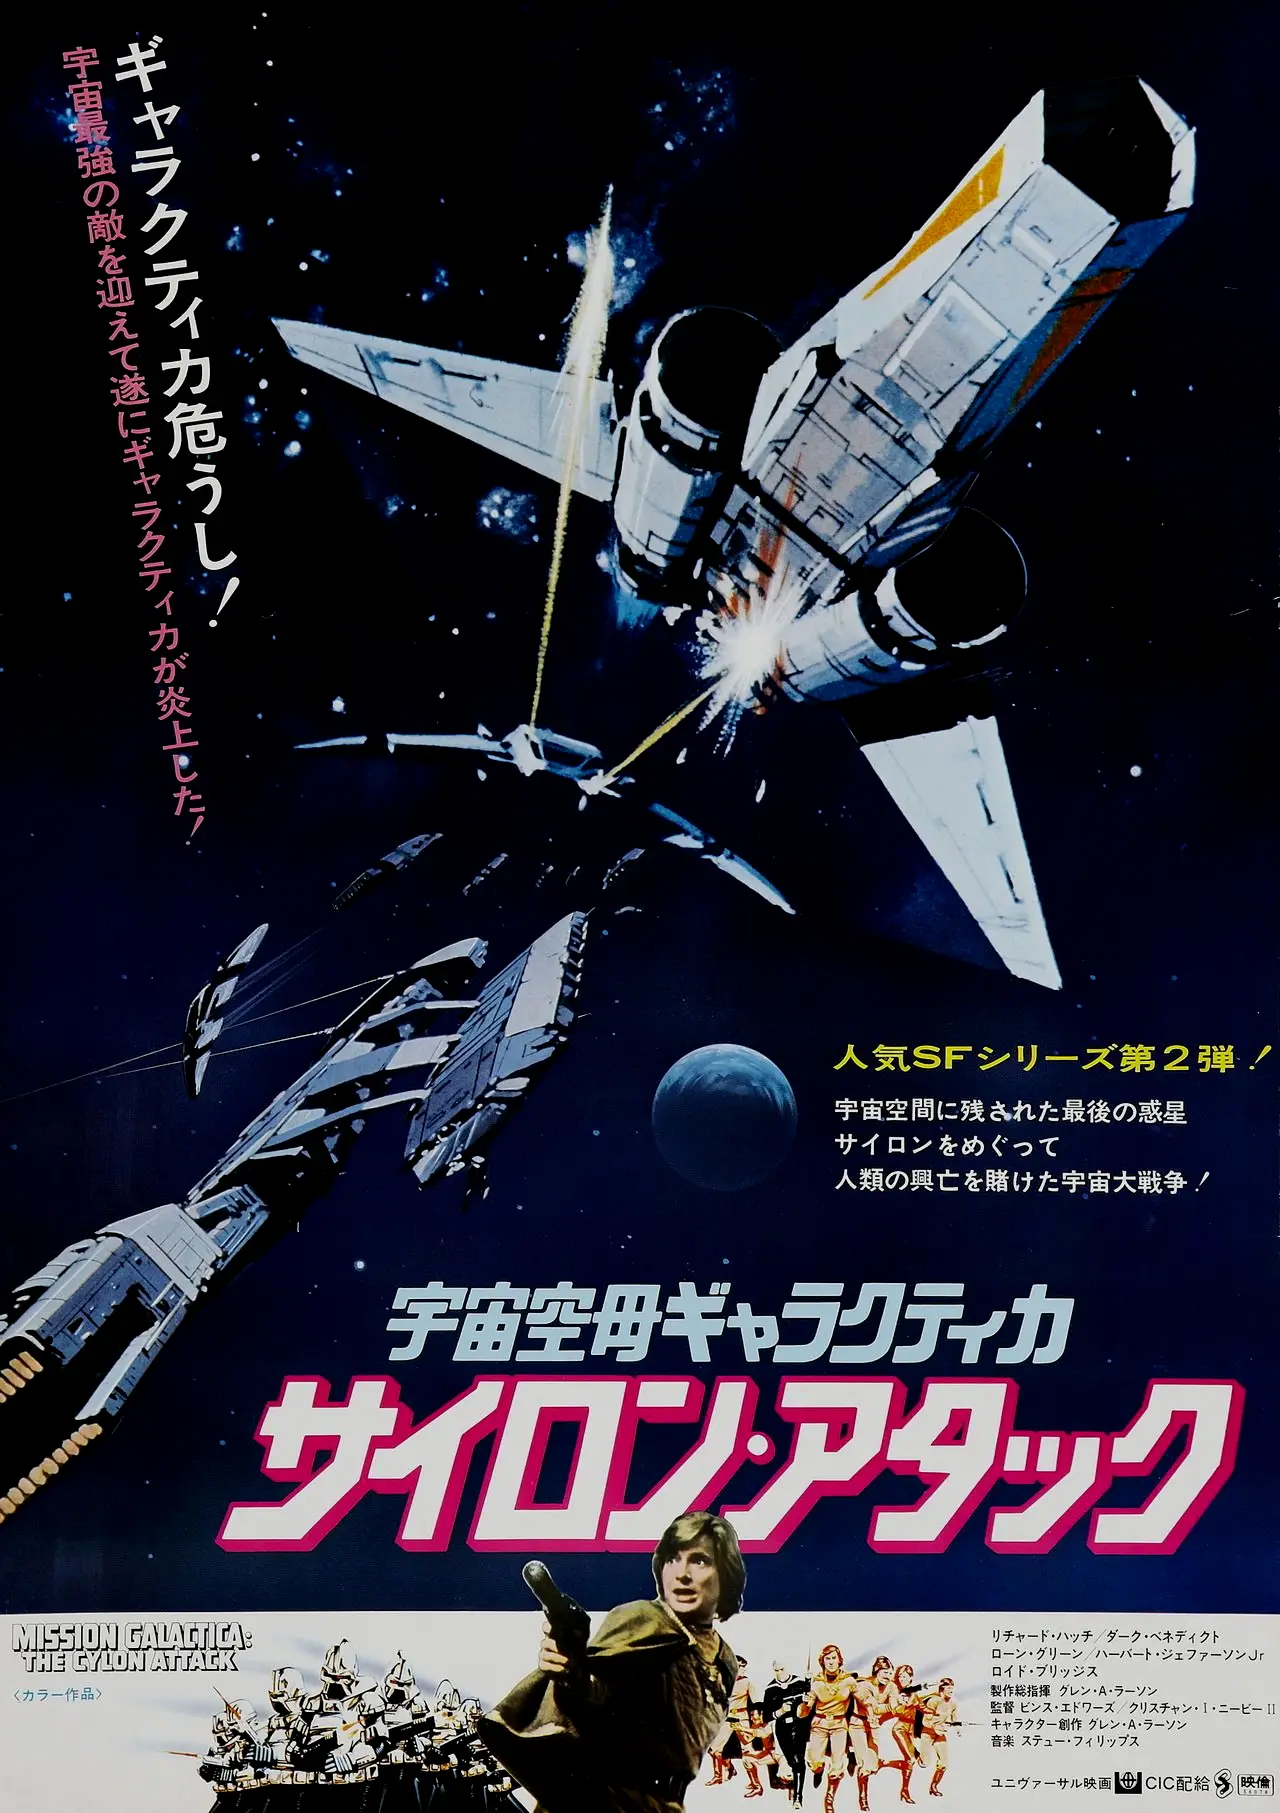 同时期的《太空堡垒卡拉狄加》本身就是一部跟风《星战》的电影，在日本市场的表现不尽人意倒是完全可以理解